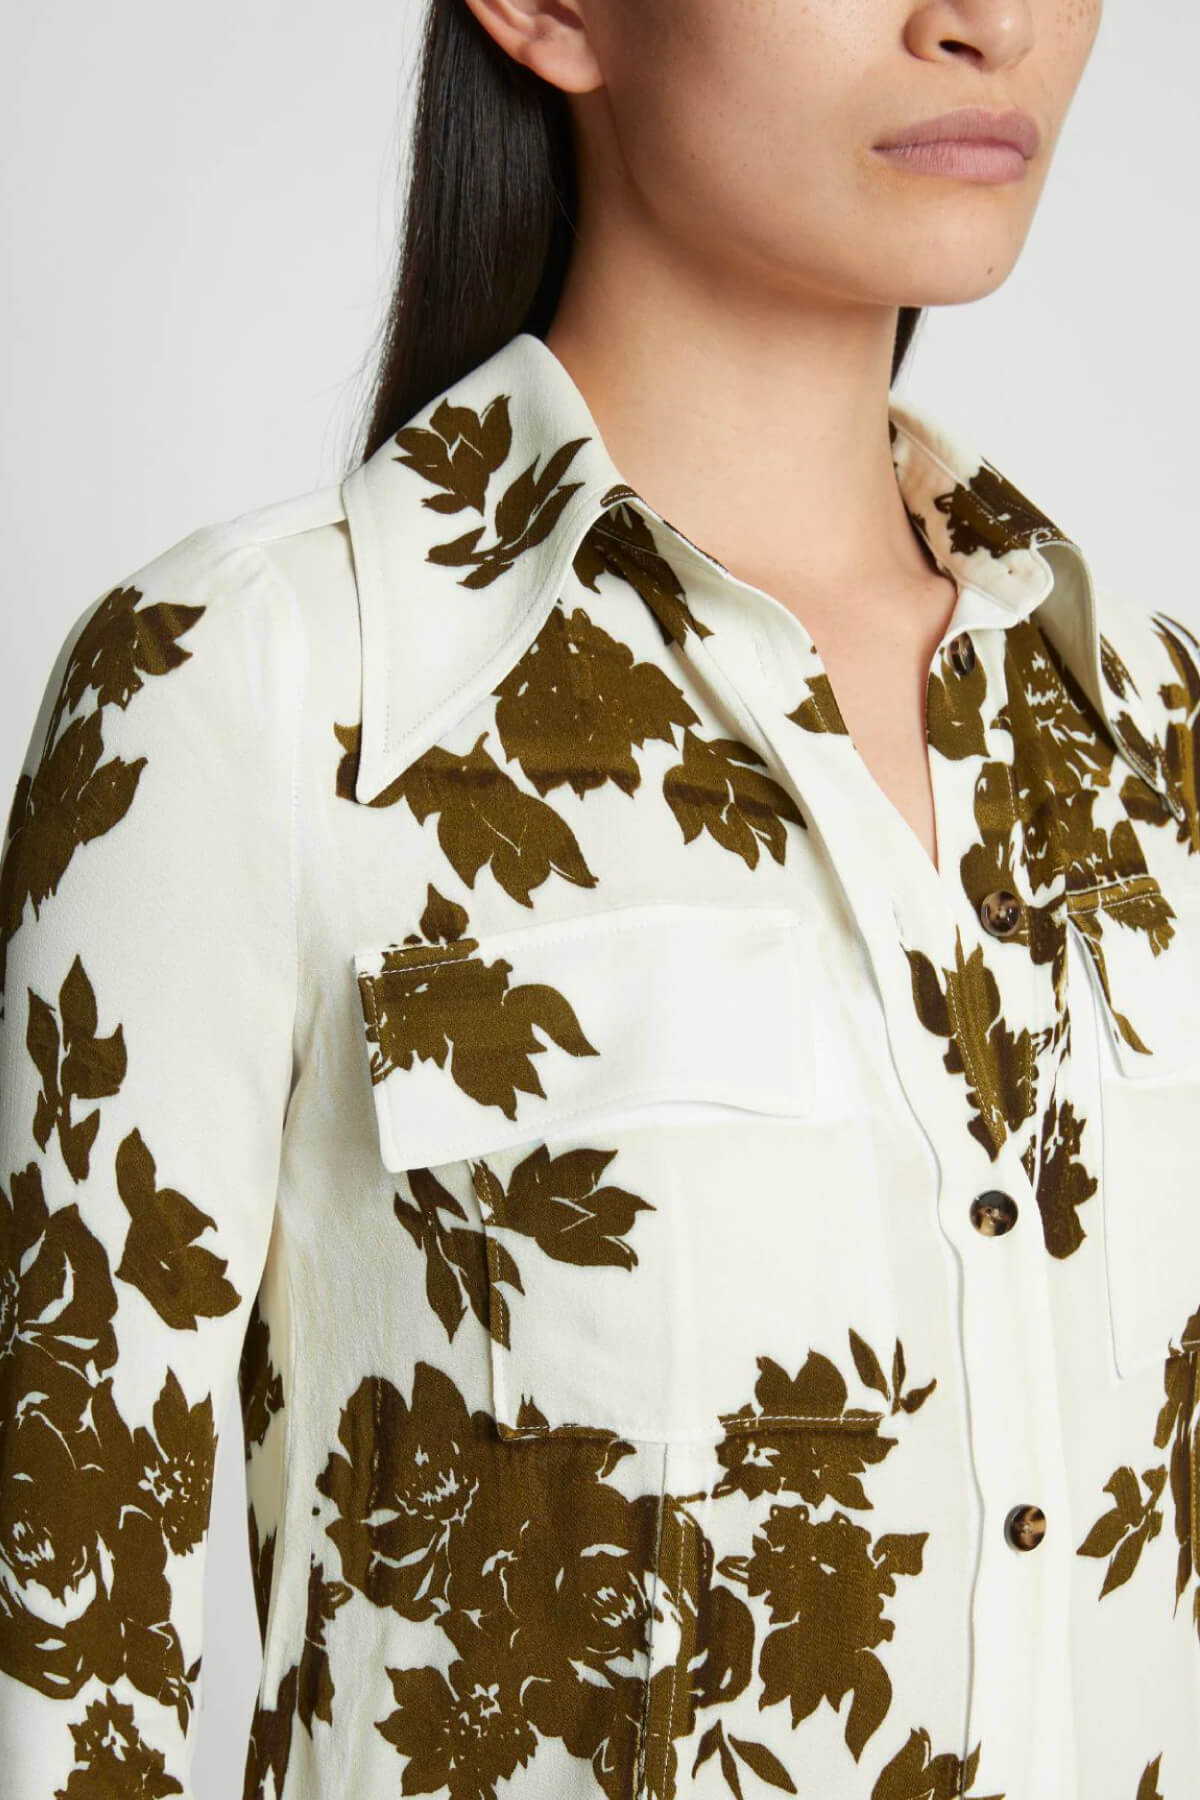 Proenza Schouler Floral Garment Printed Shirt - Ecru Multi